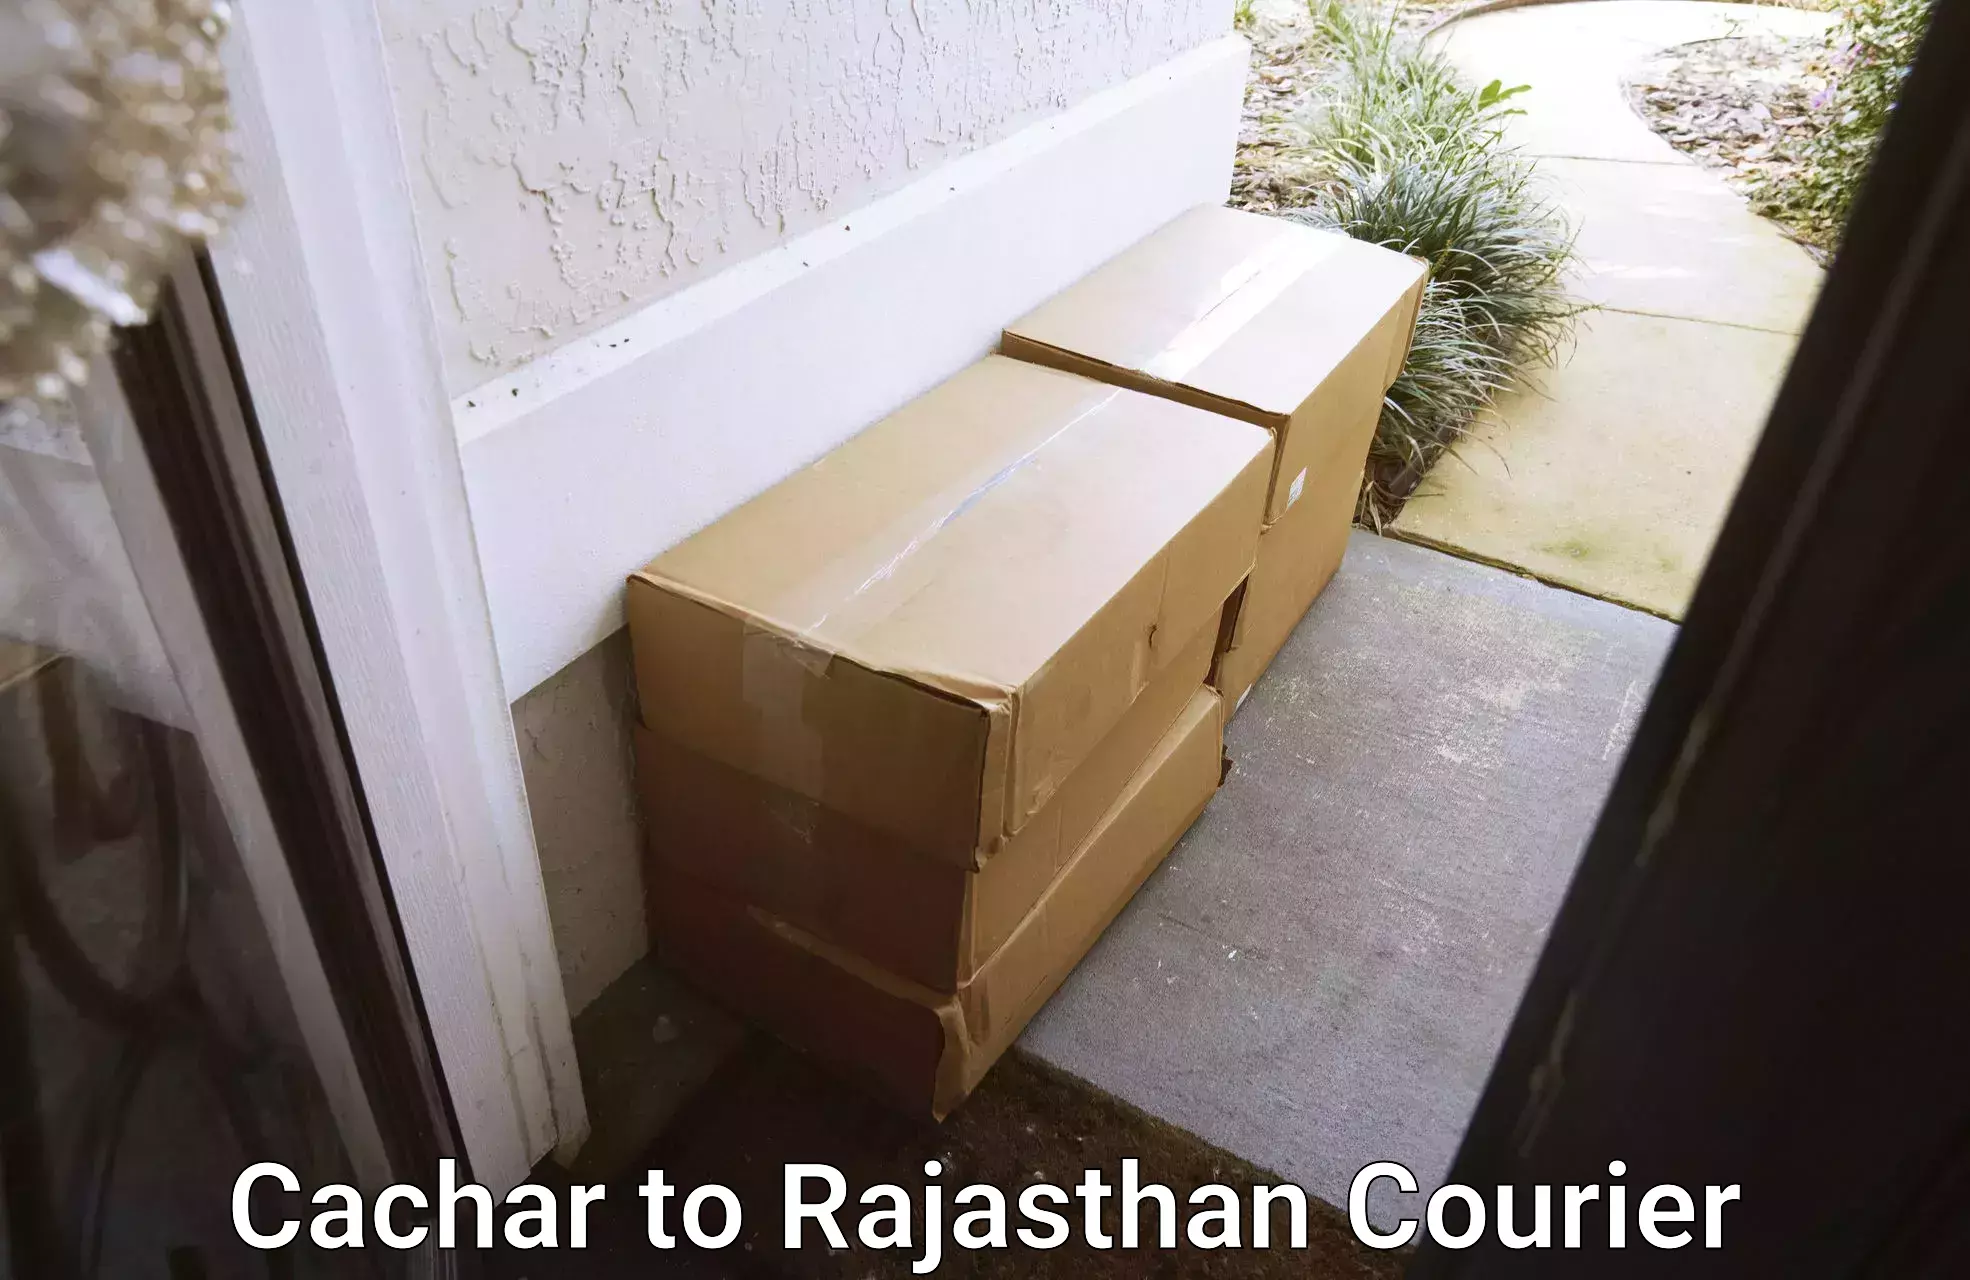 Door-to-door freight service Cachar to Taranagar